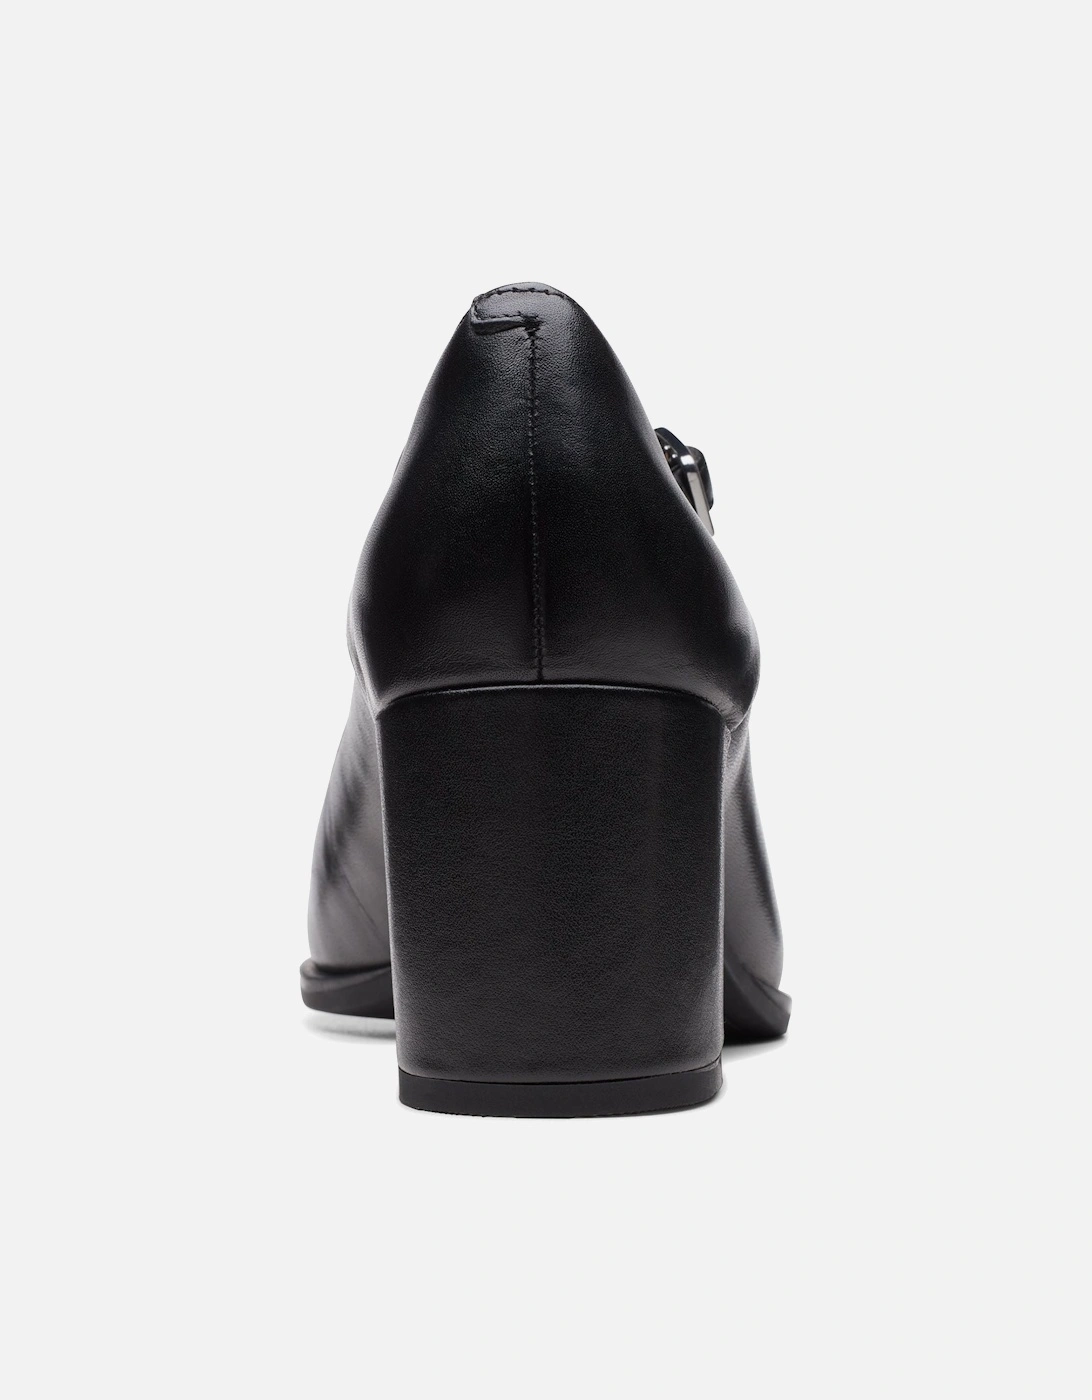 Freva55 Strap in black leather